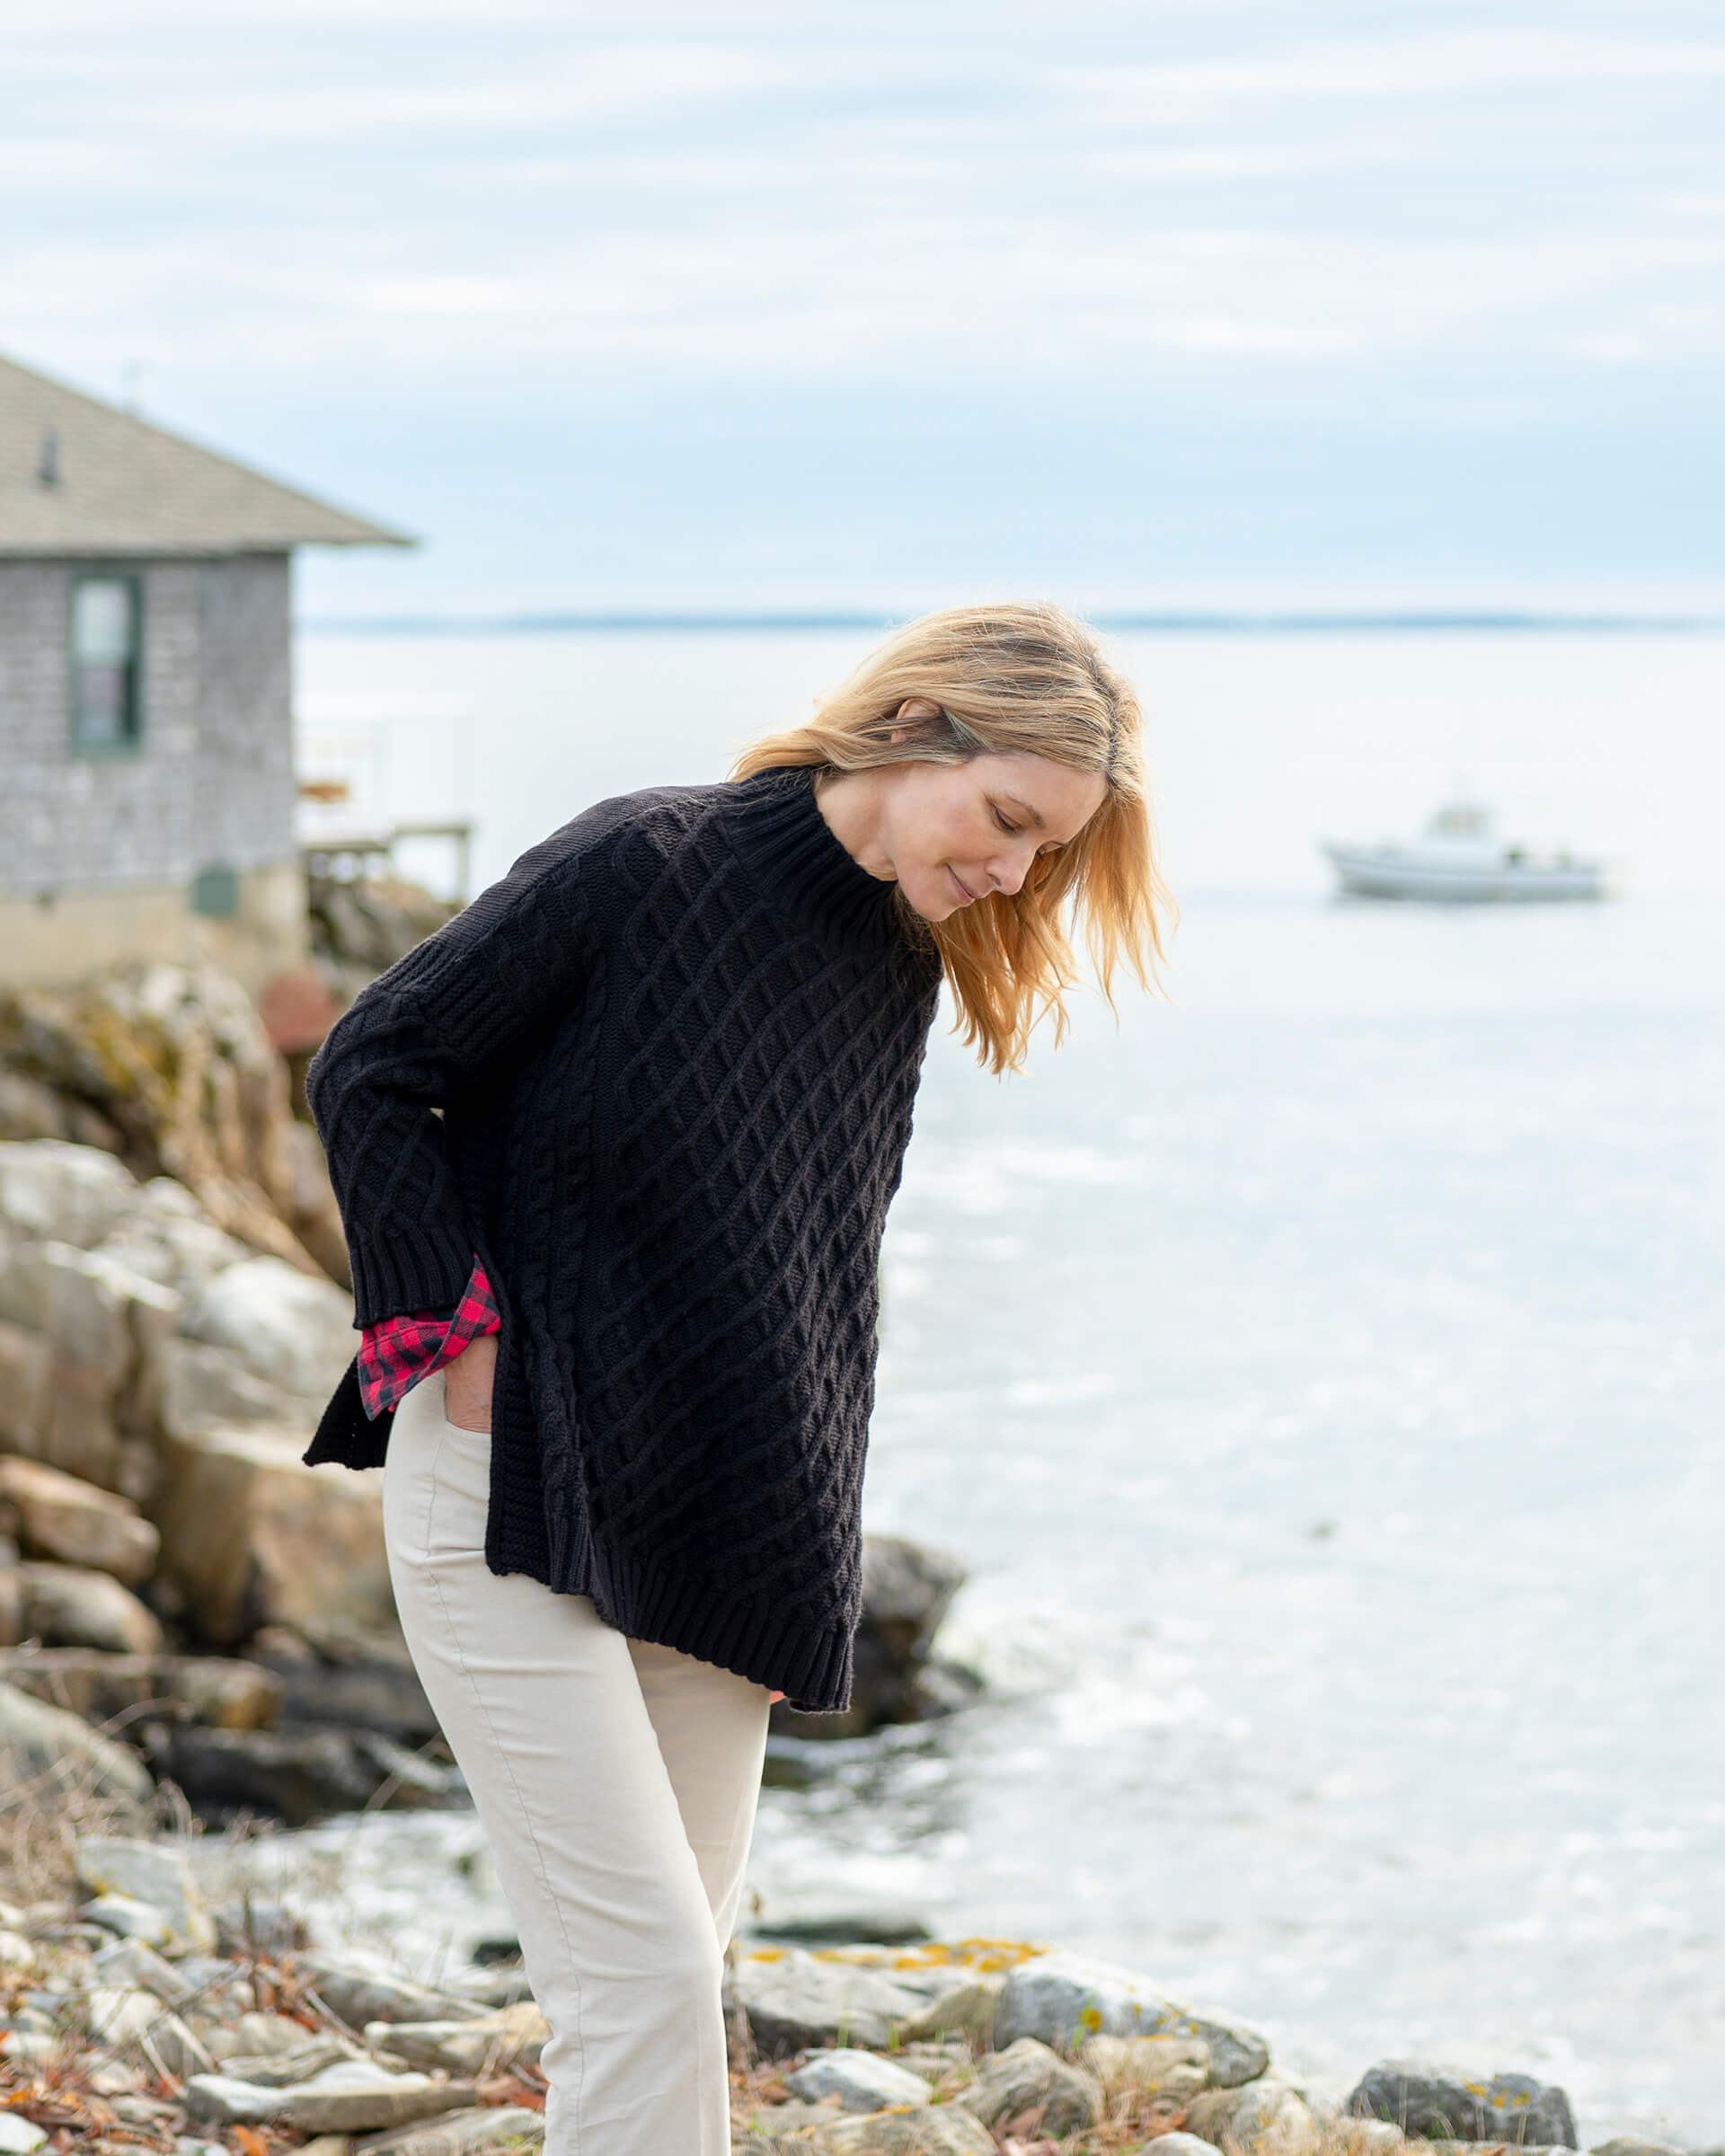 blonde female wearing black sweater standing on rocks near the ocean